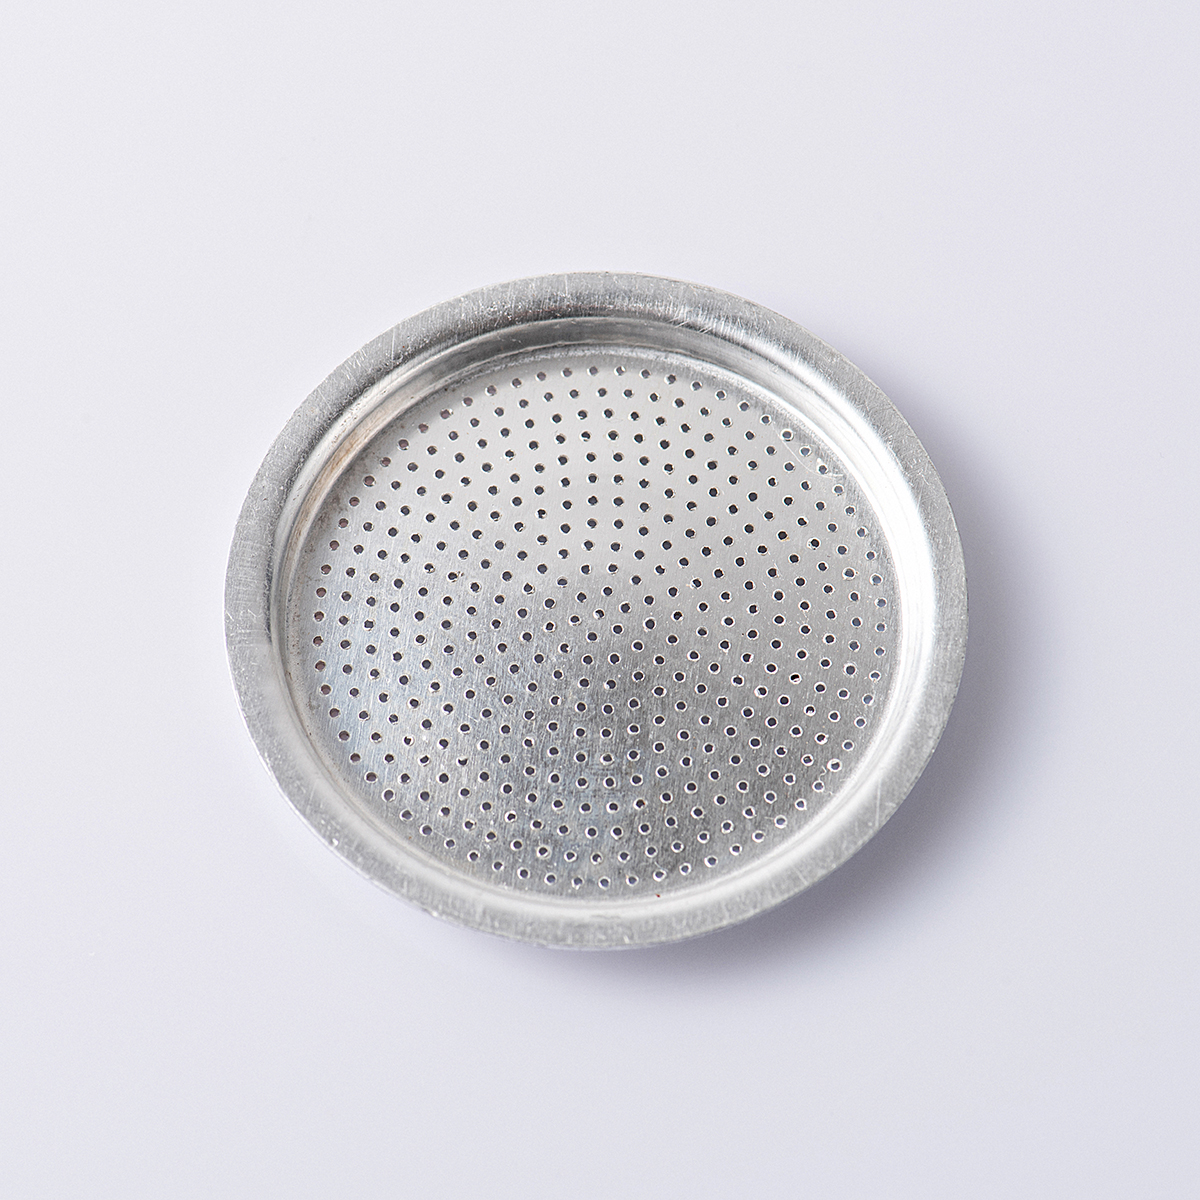 咖啡機配件周邊 玻璃壺 攪盤 濾片 布粉器杯蓋 摩卡壺 (5.4折)